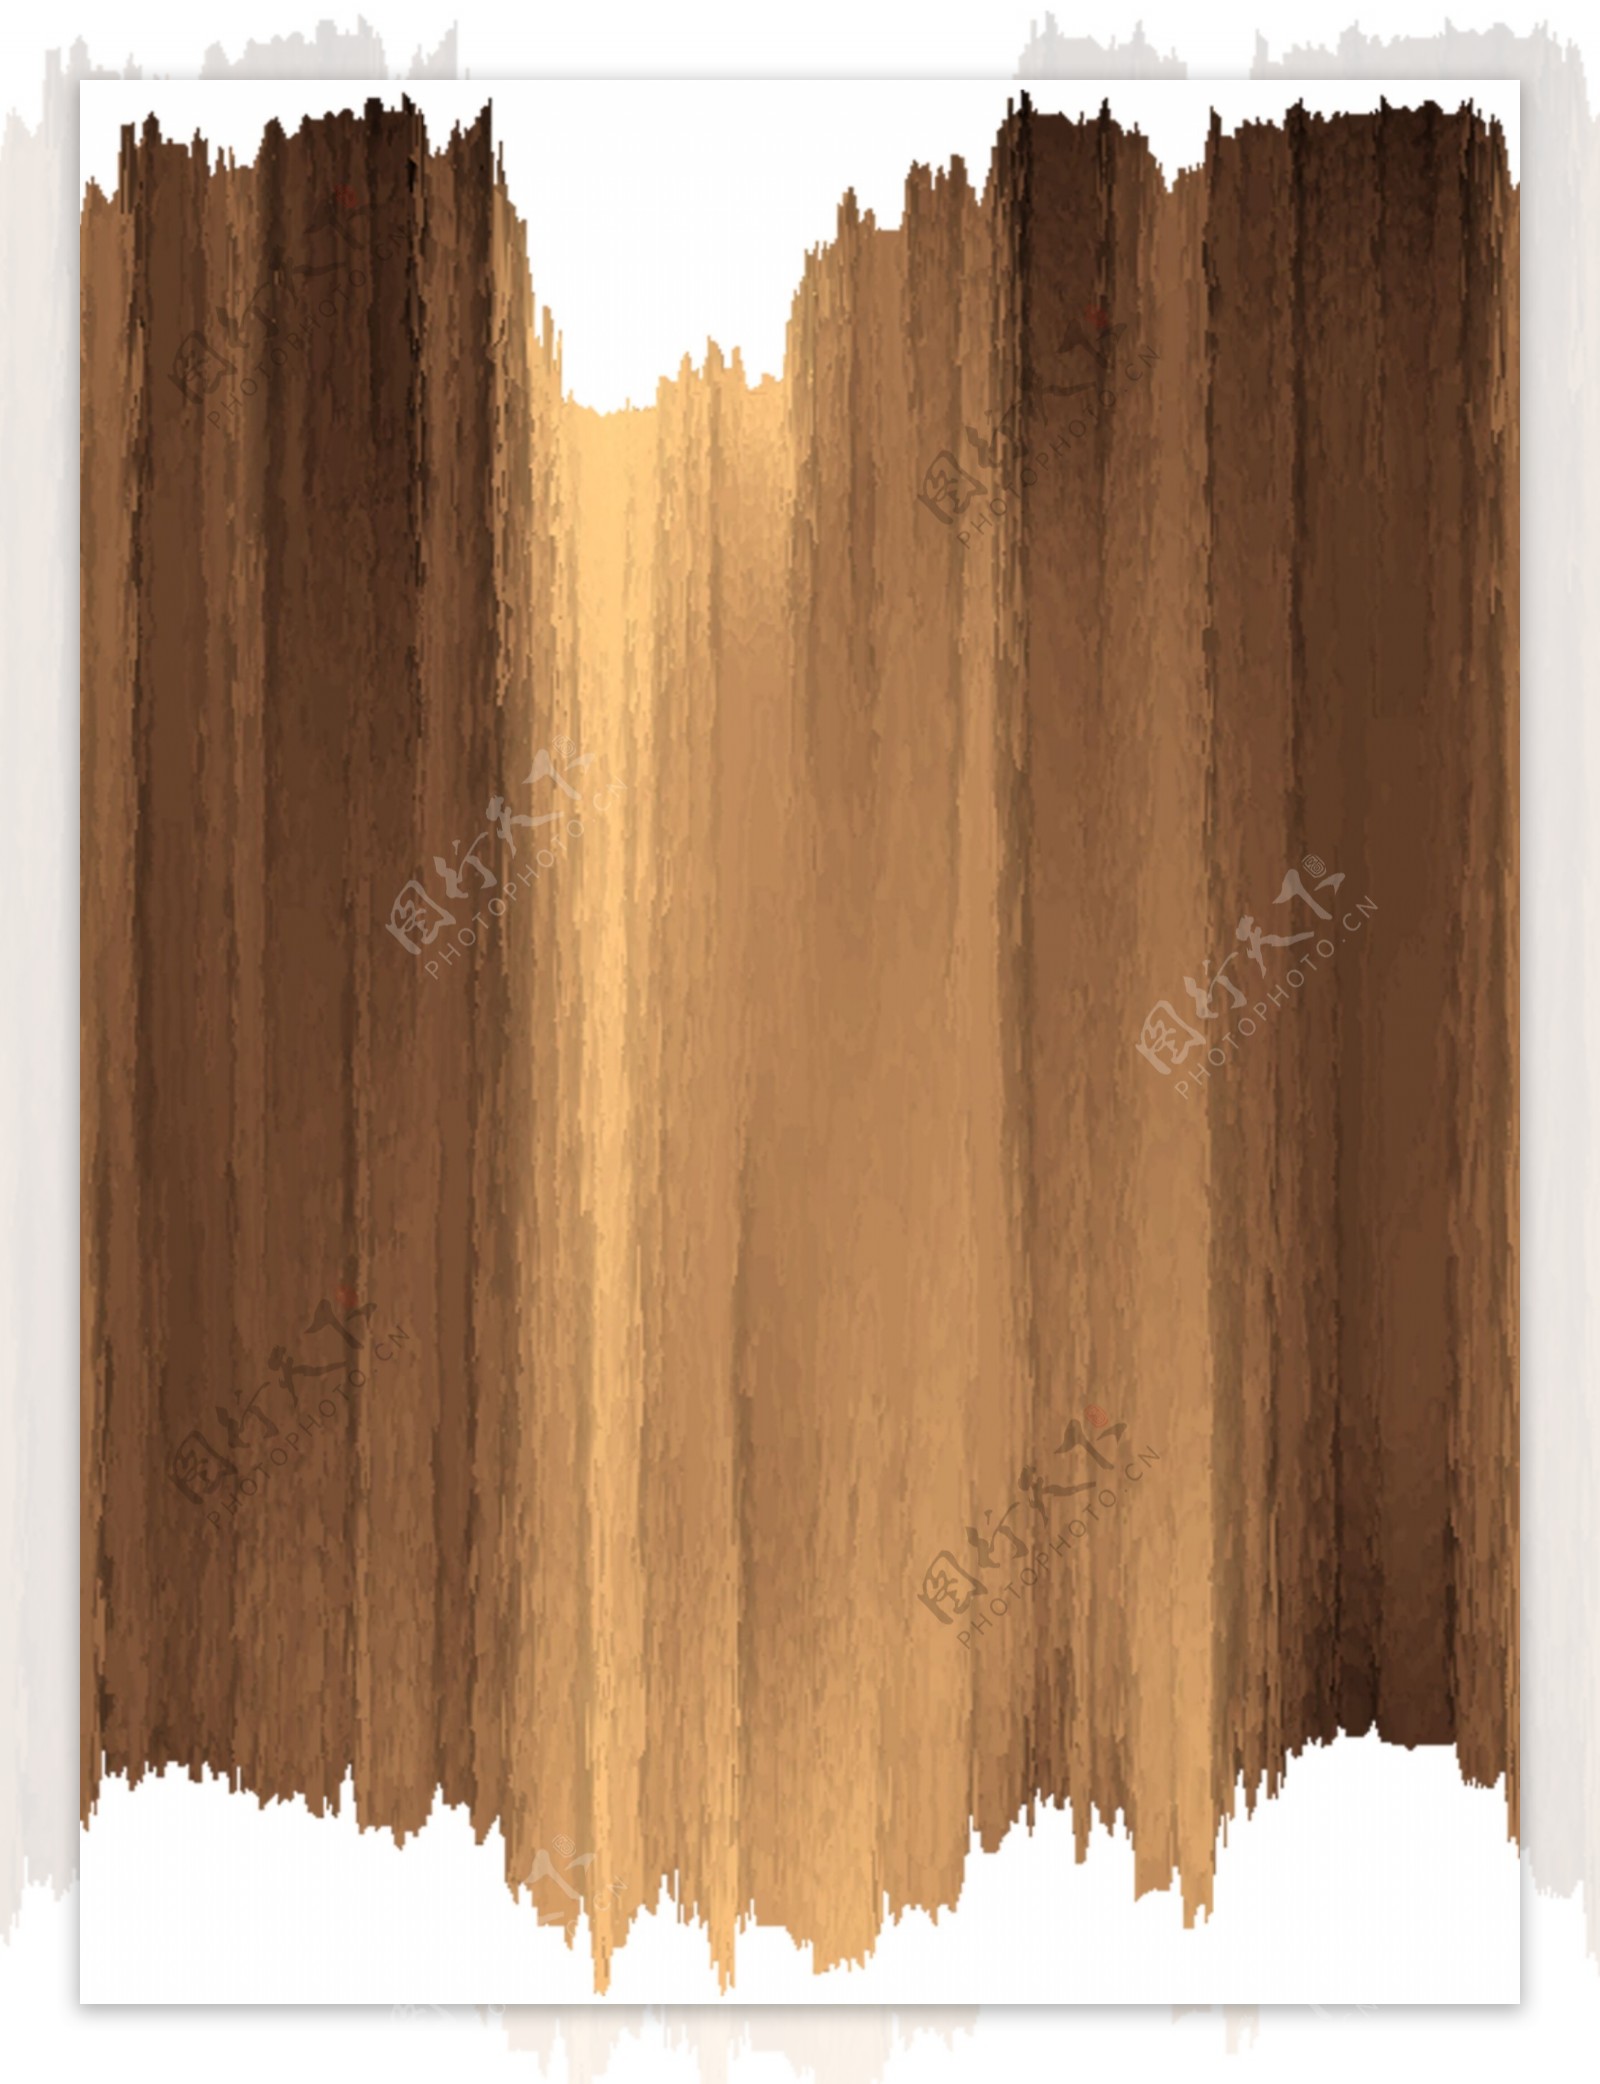 木纹木板纹理木板纹木纹图